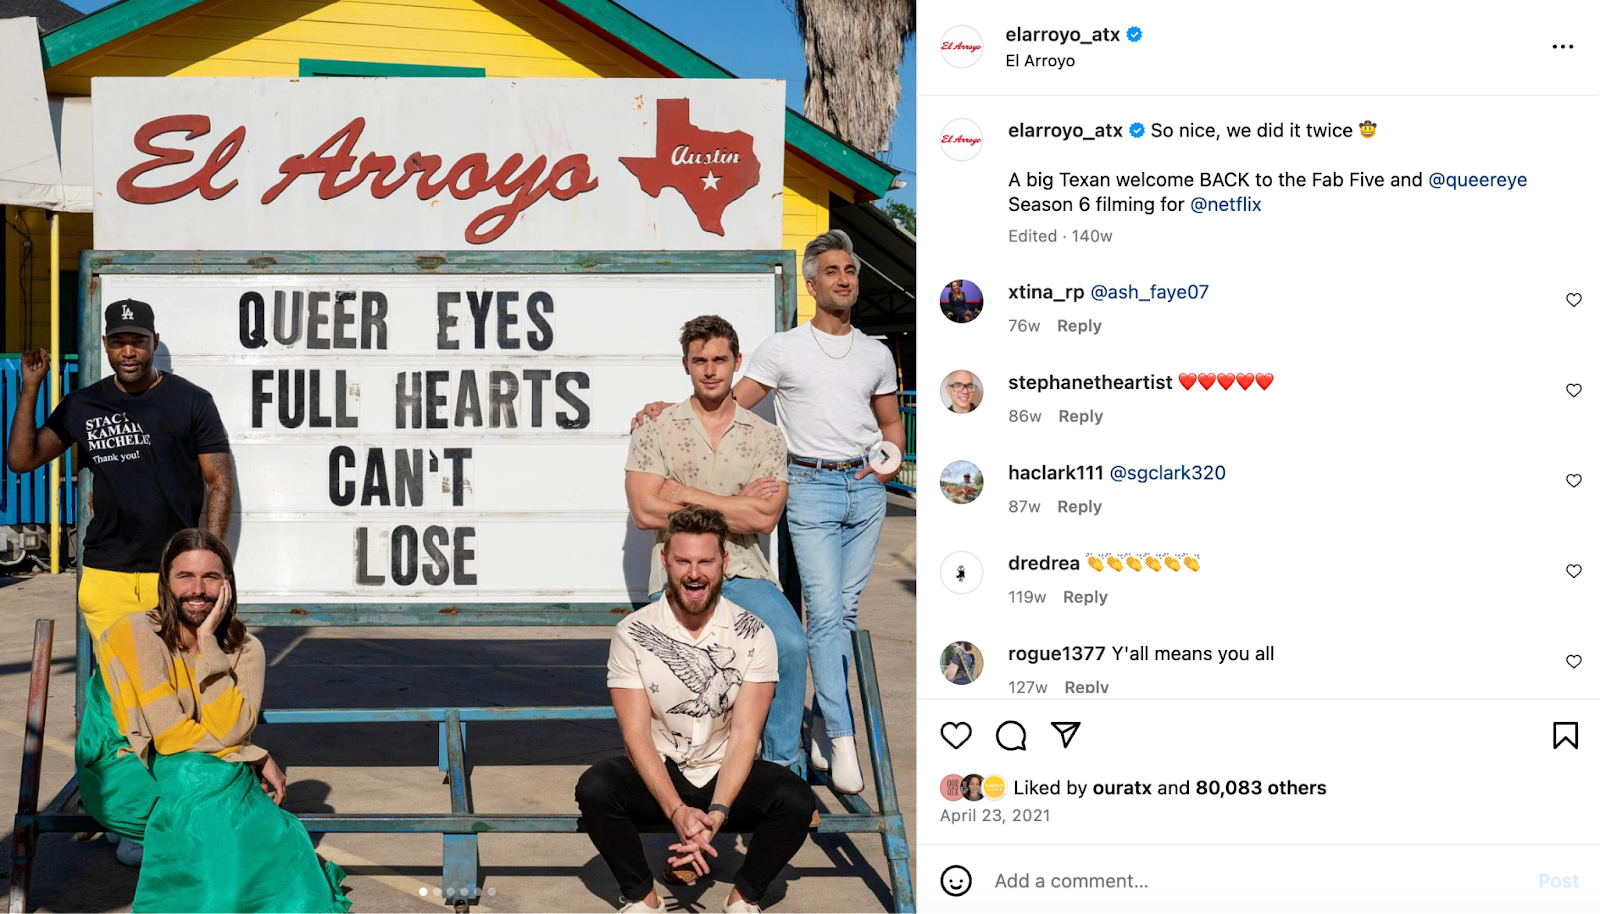 Idee creative per il marketing di un ristorante: il cast di Queer Eye posa davanti all'insegna di El Arroyo per promuovere lo spettacolo.